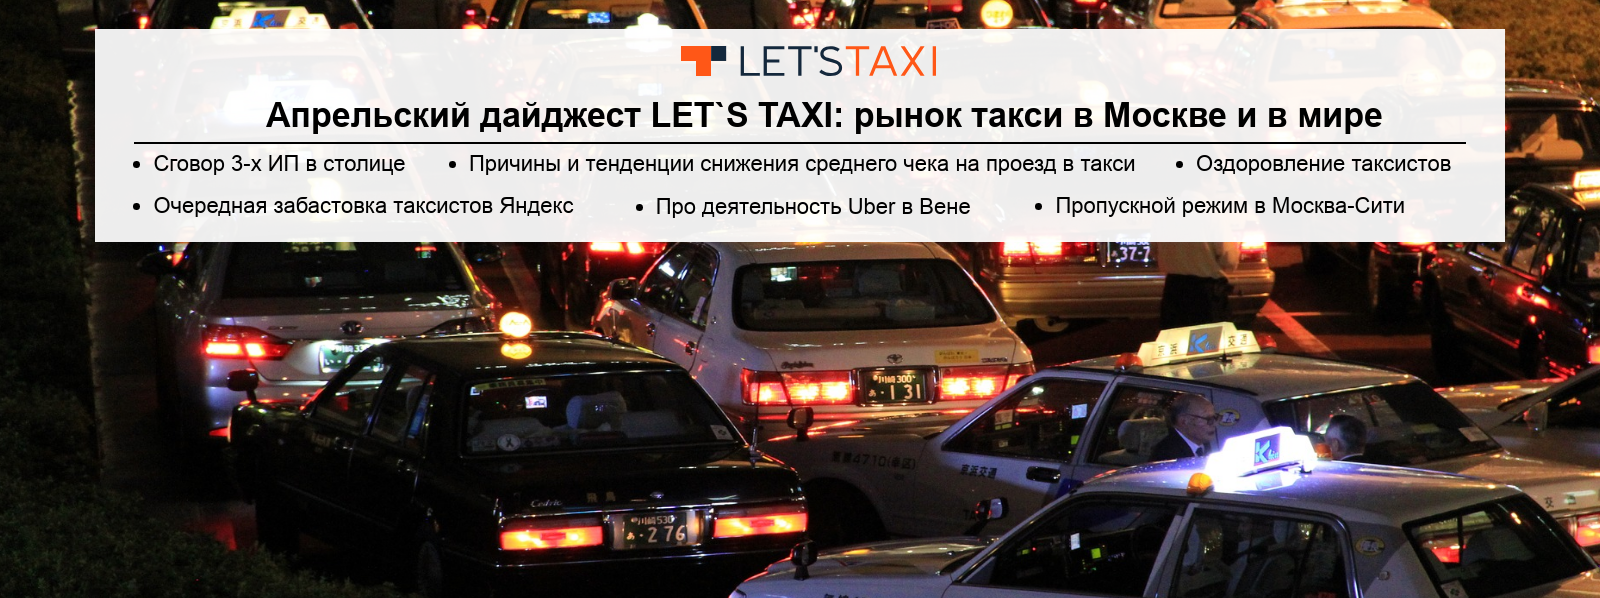 рынок такси в Москве и в мире